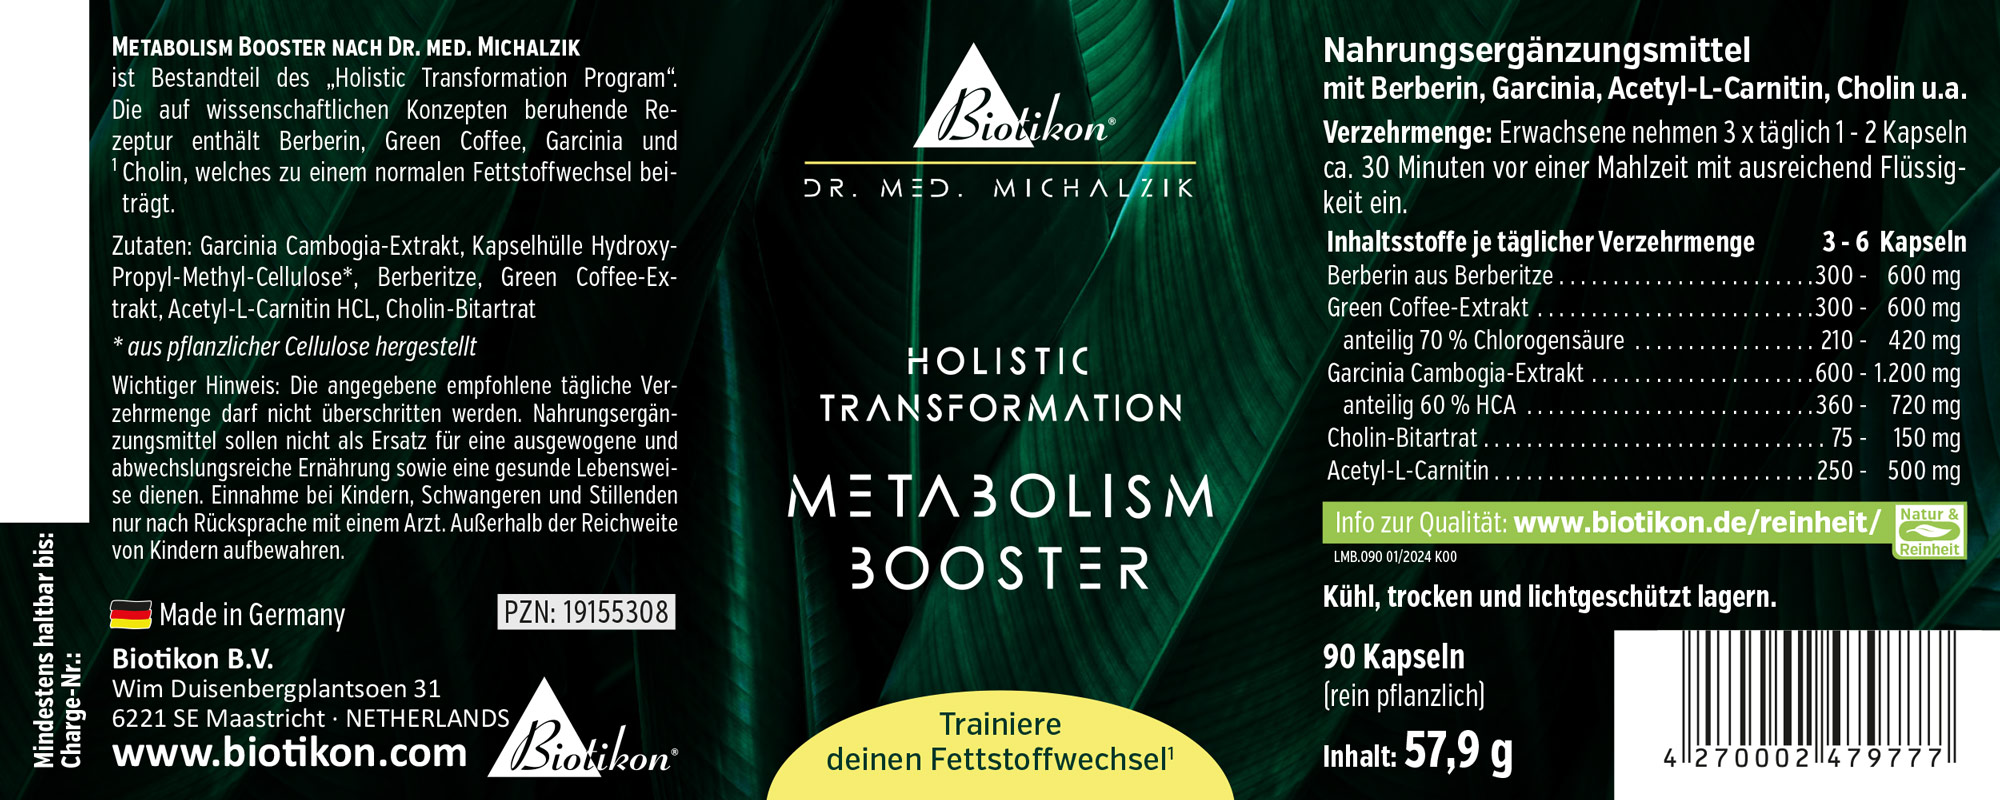 Metabolism Booster by Dr. med. Michalzik